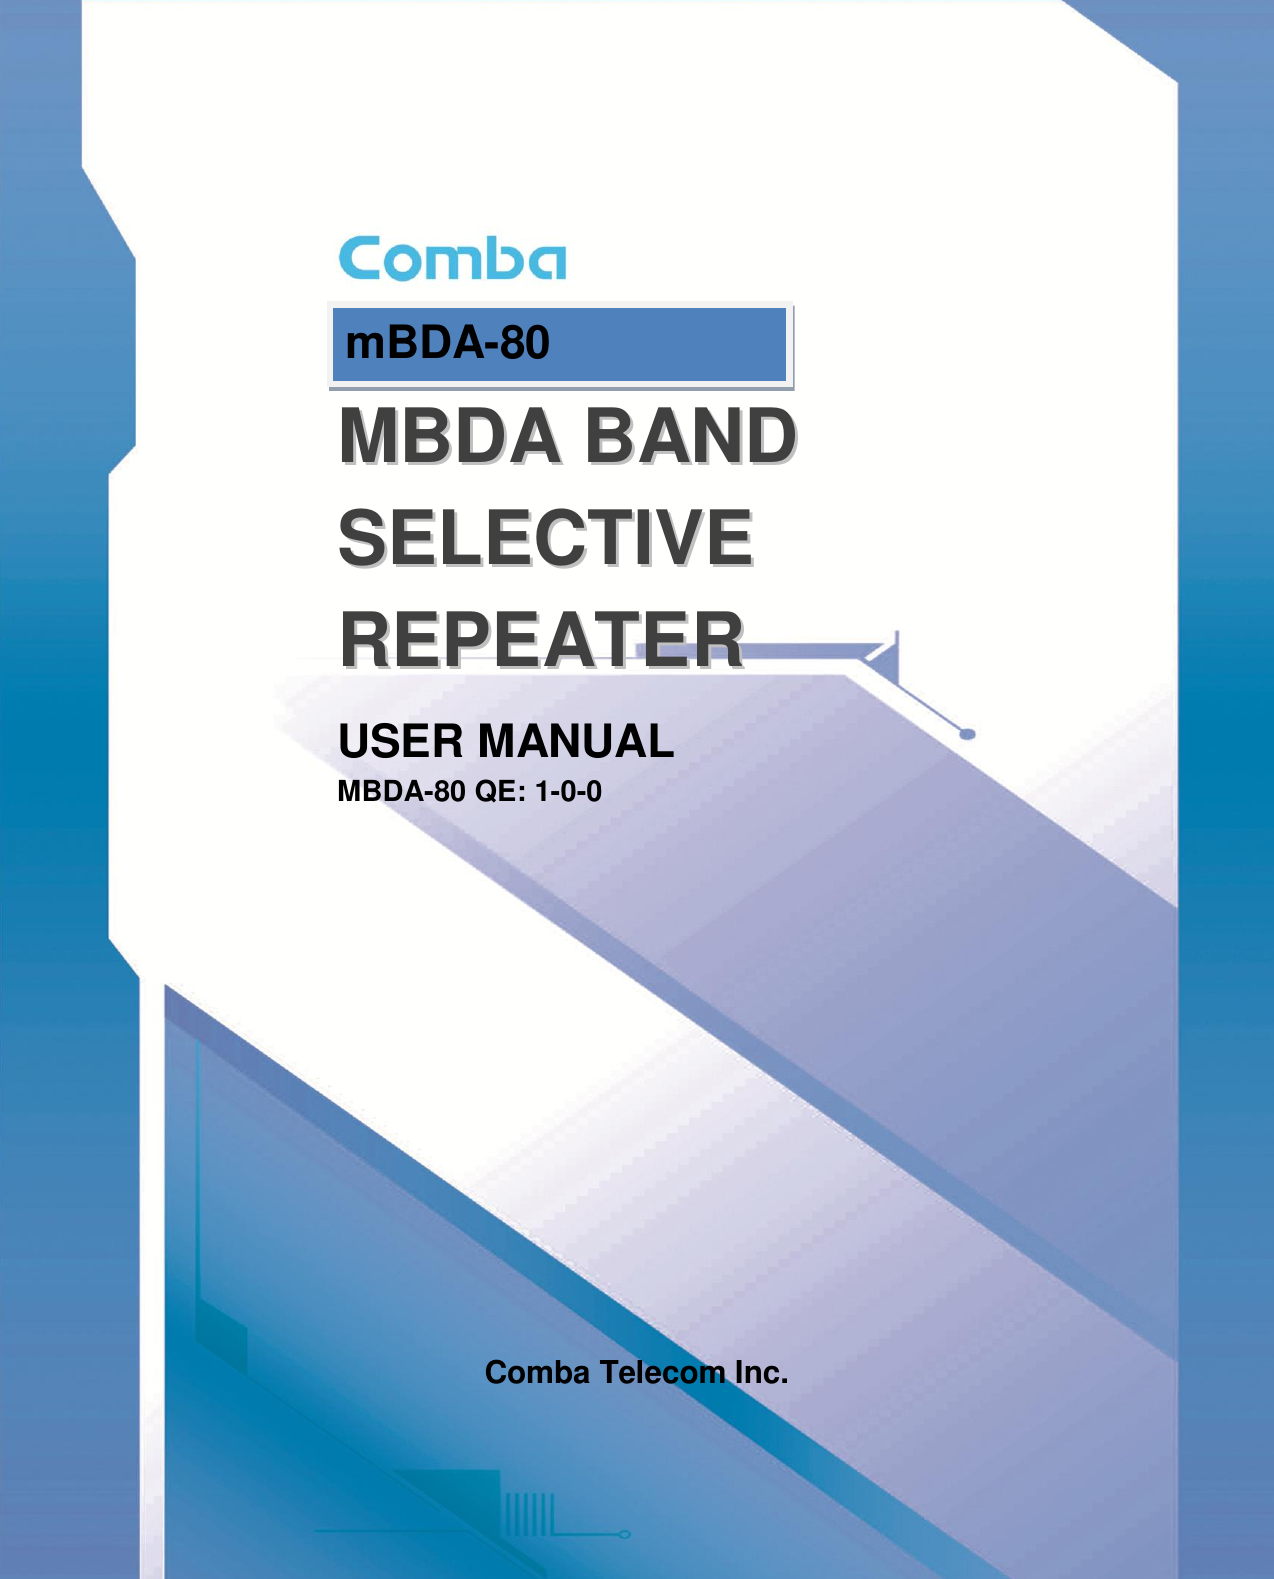 Page 1 of Comba Telecom MBDA-80 mBDA Band Seletive Repeater User Manual 